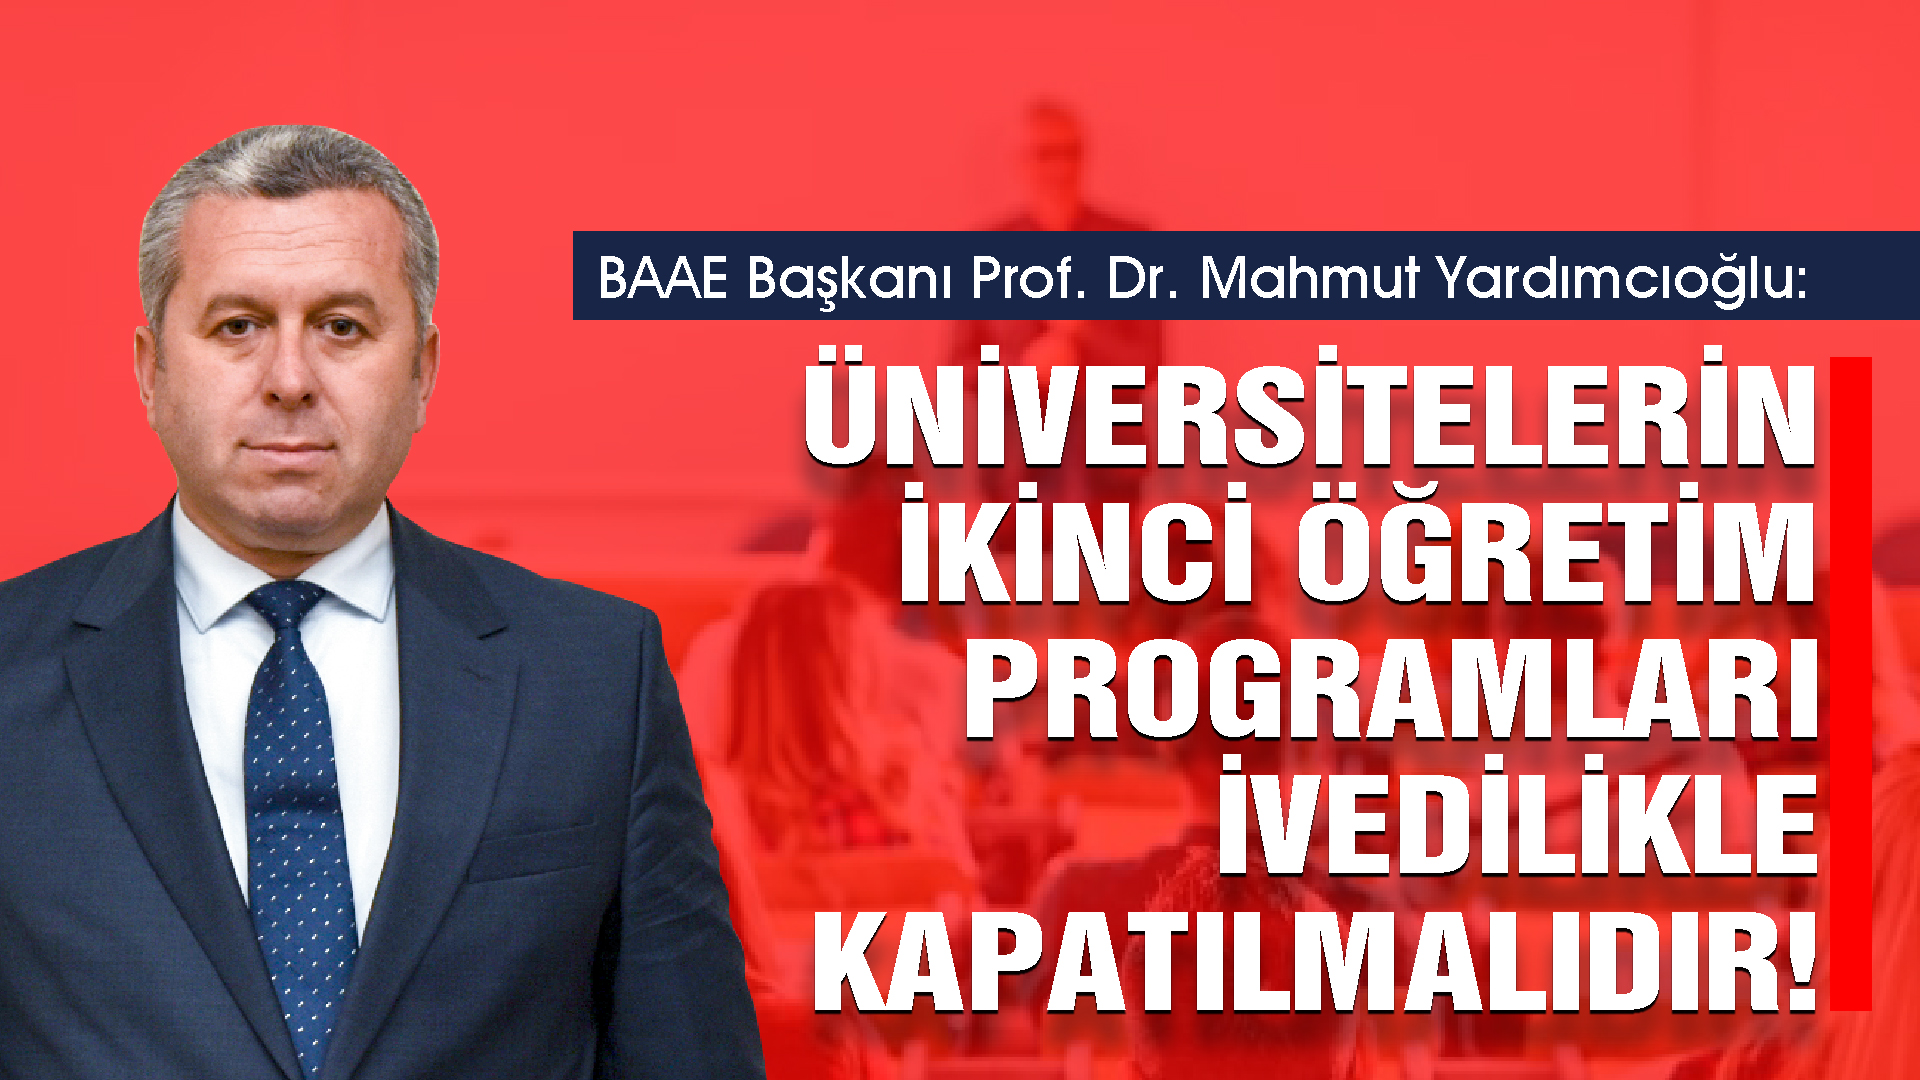 Yardımcıoğlu: Üniversitelerin İkinci Öğretim Programları İvedilikle Kapatılmalıdır!